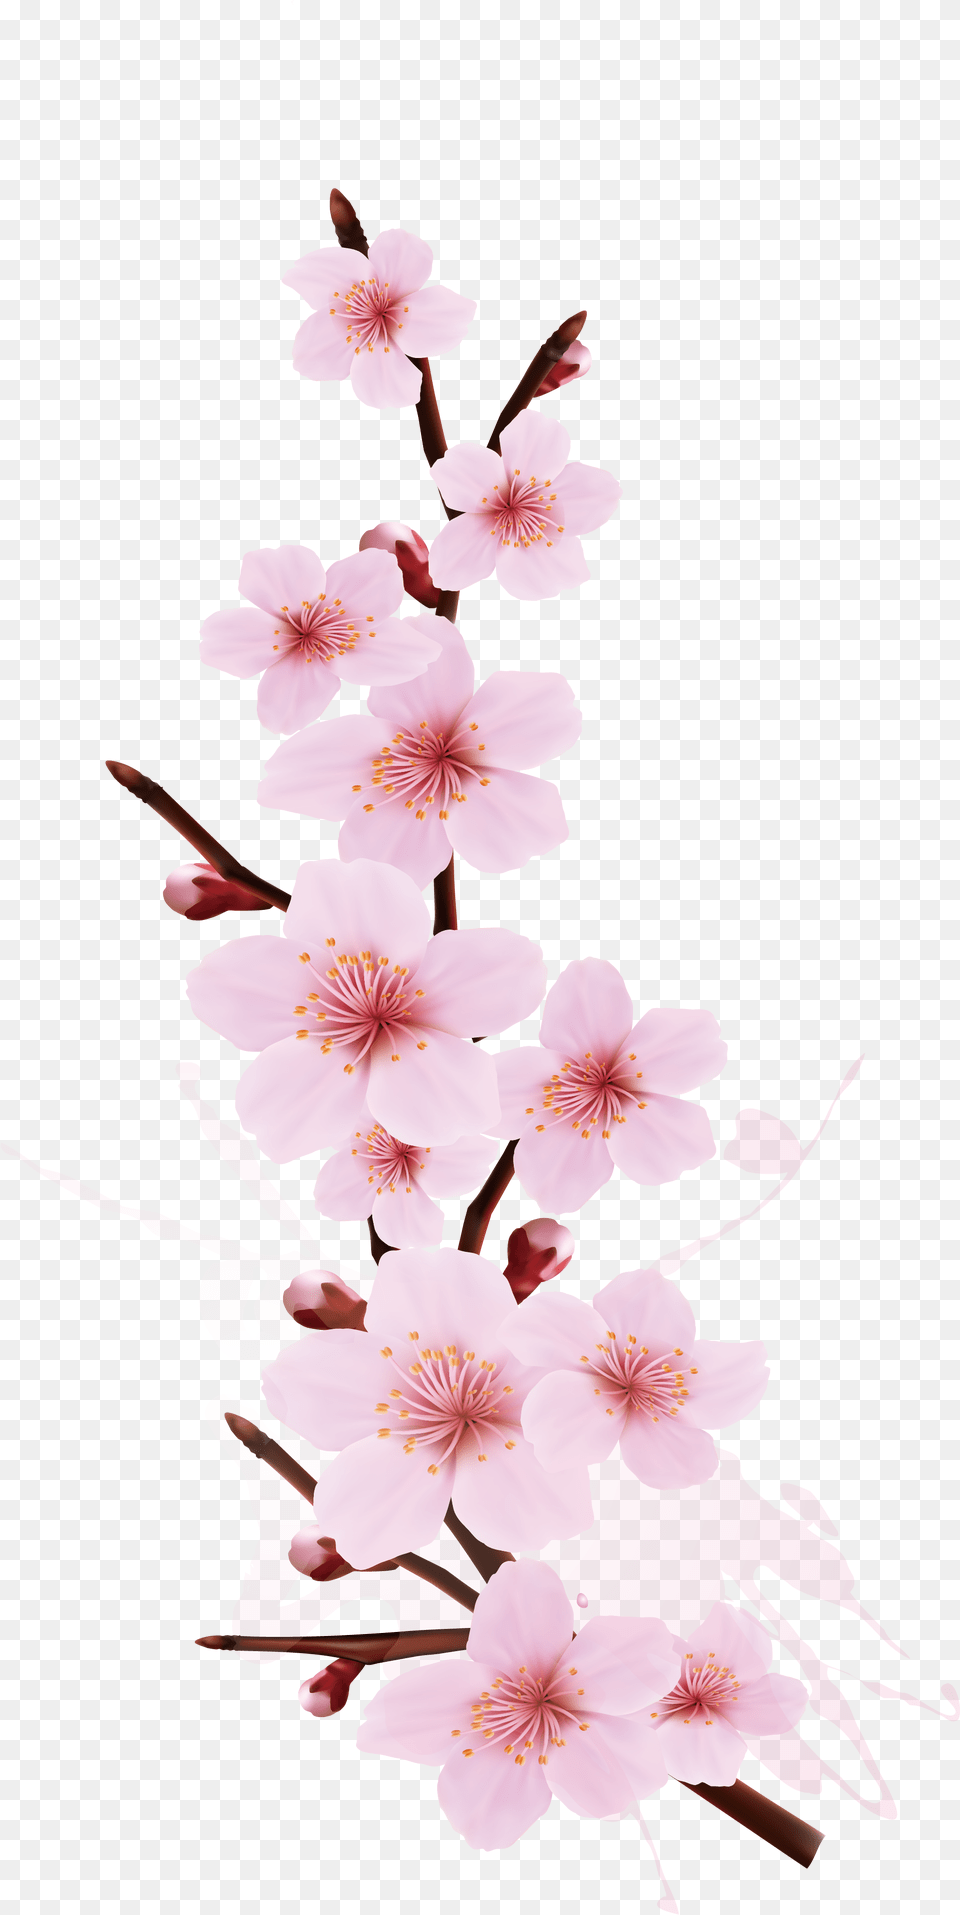 Transparent Cherry Blossom Cherry Blossom Branch Design, Flower, Plant, Cherry Blossom, Petal Png